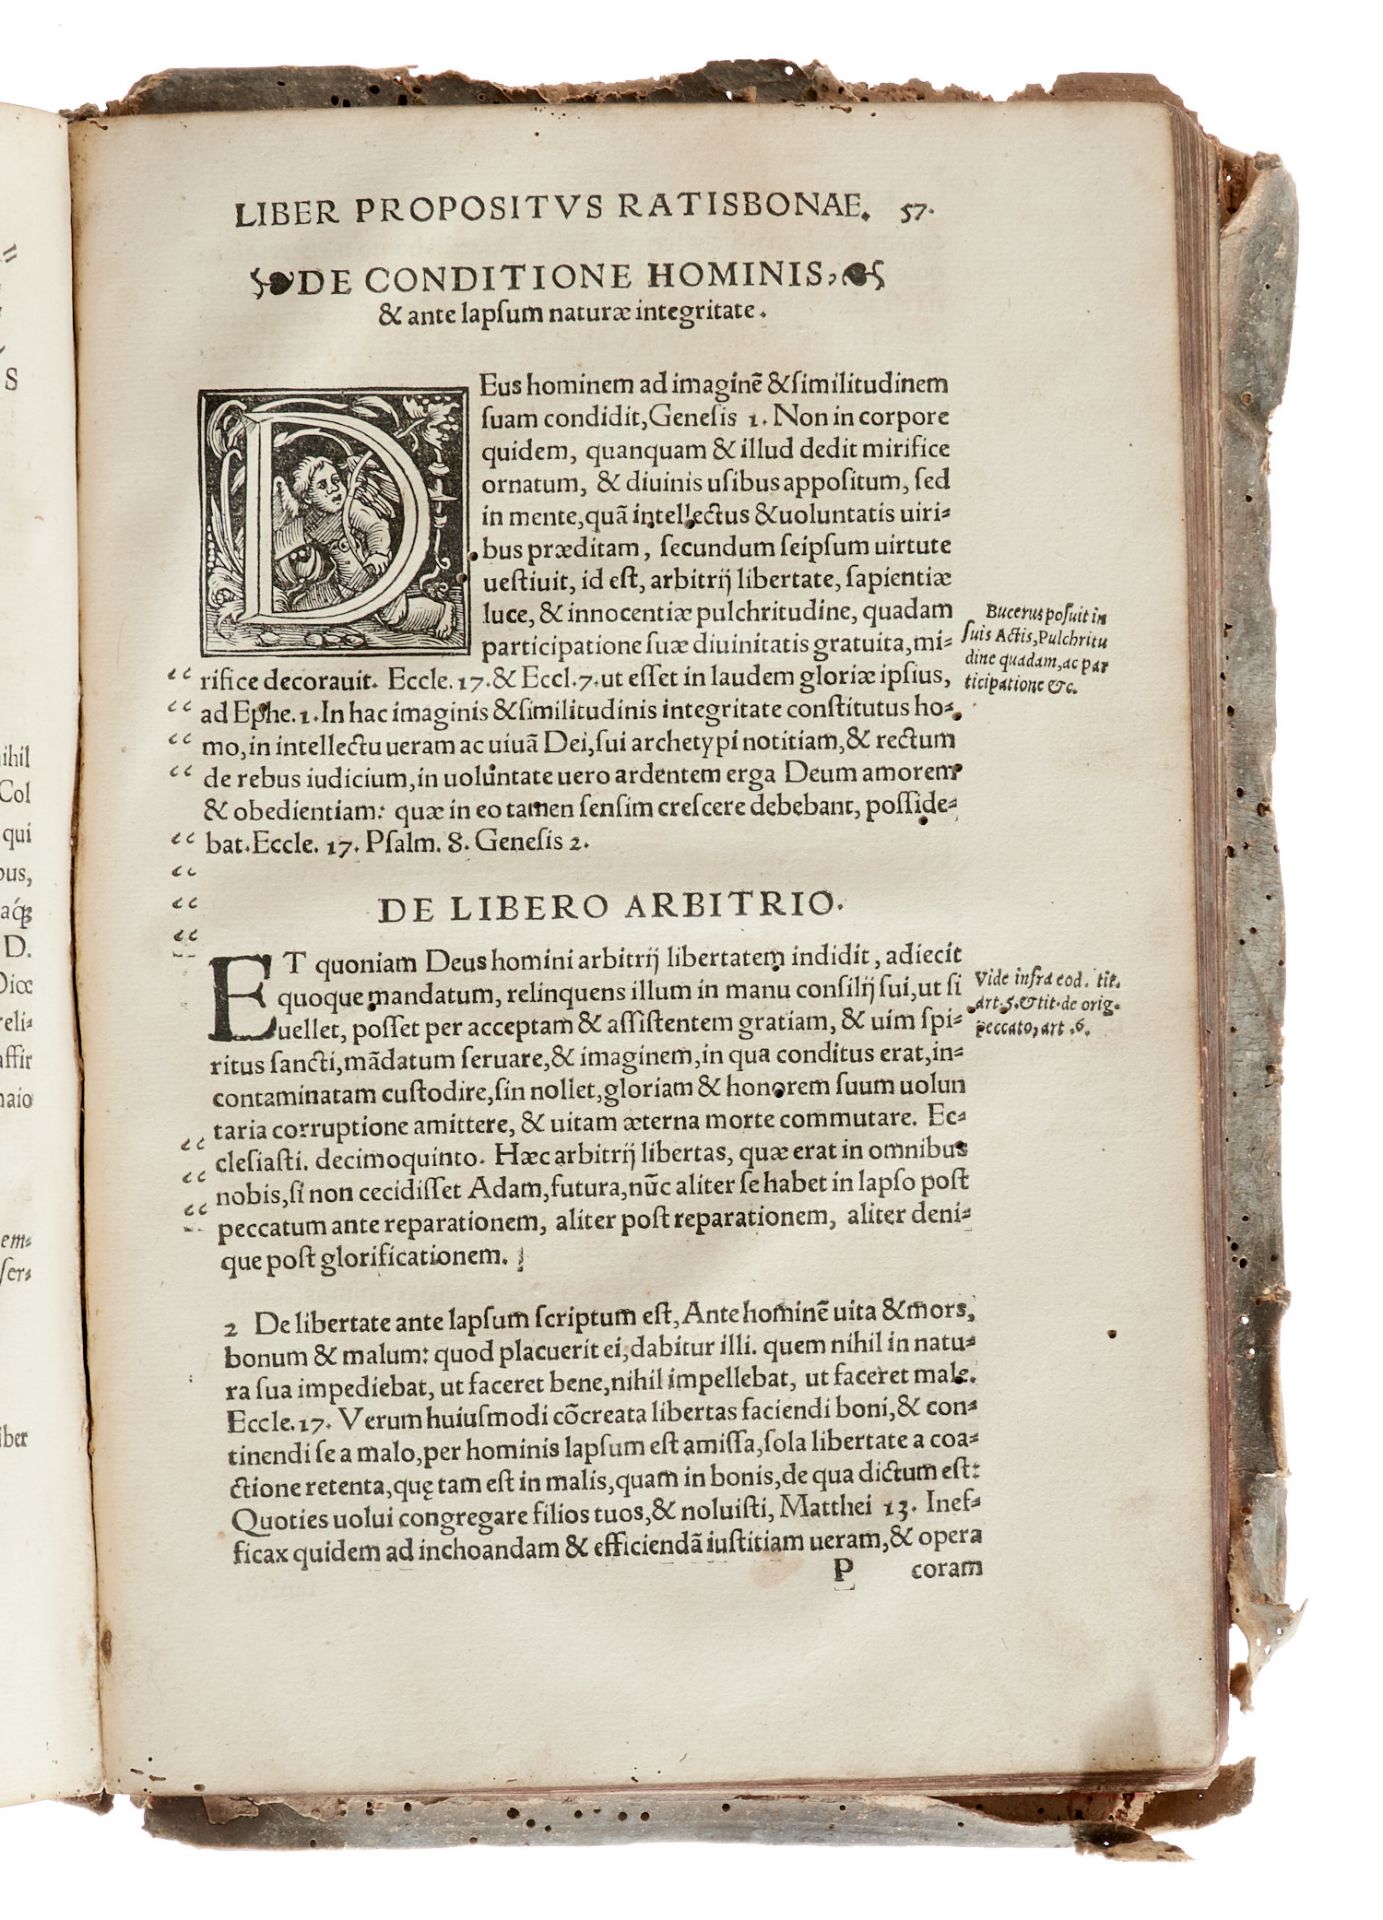 Eck Sammelband mit 3 Werken katholischer Theologen der Reformationszeit in erster Ausgabe, nämlich - Image 5 of 5